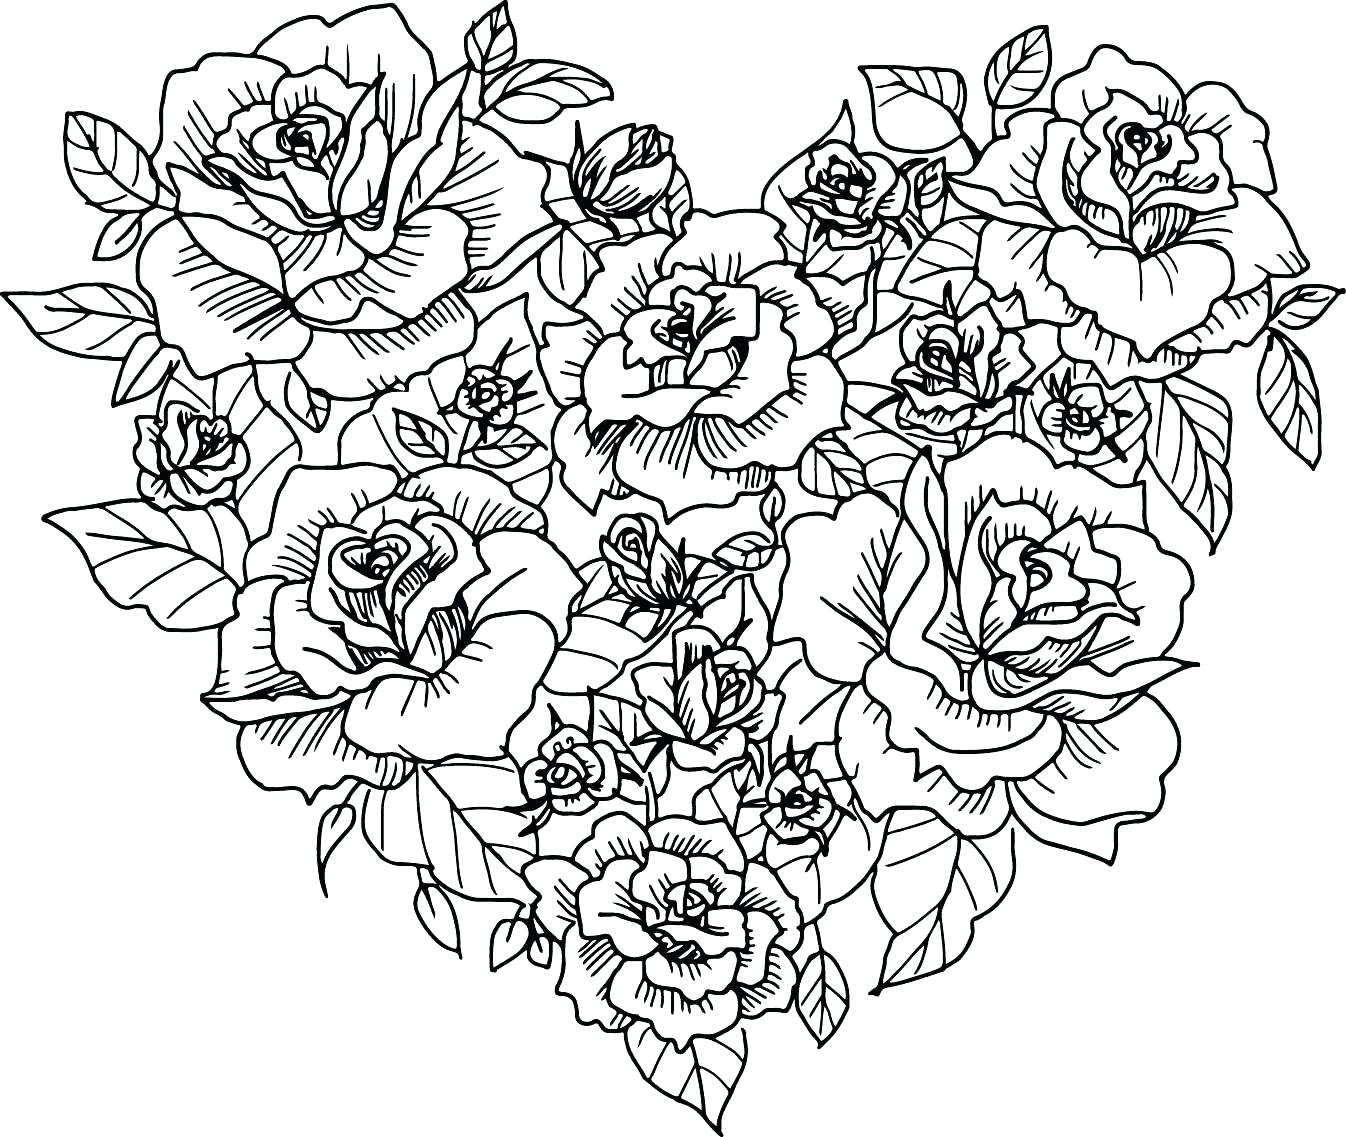 Tranh tô màu những bông hoa hồng kết thành trái tim